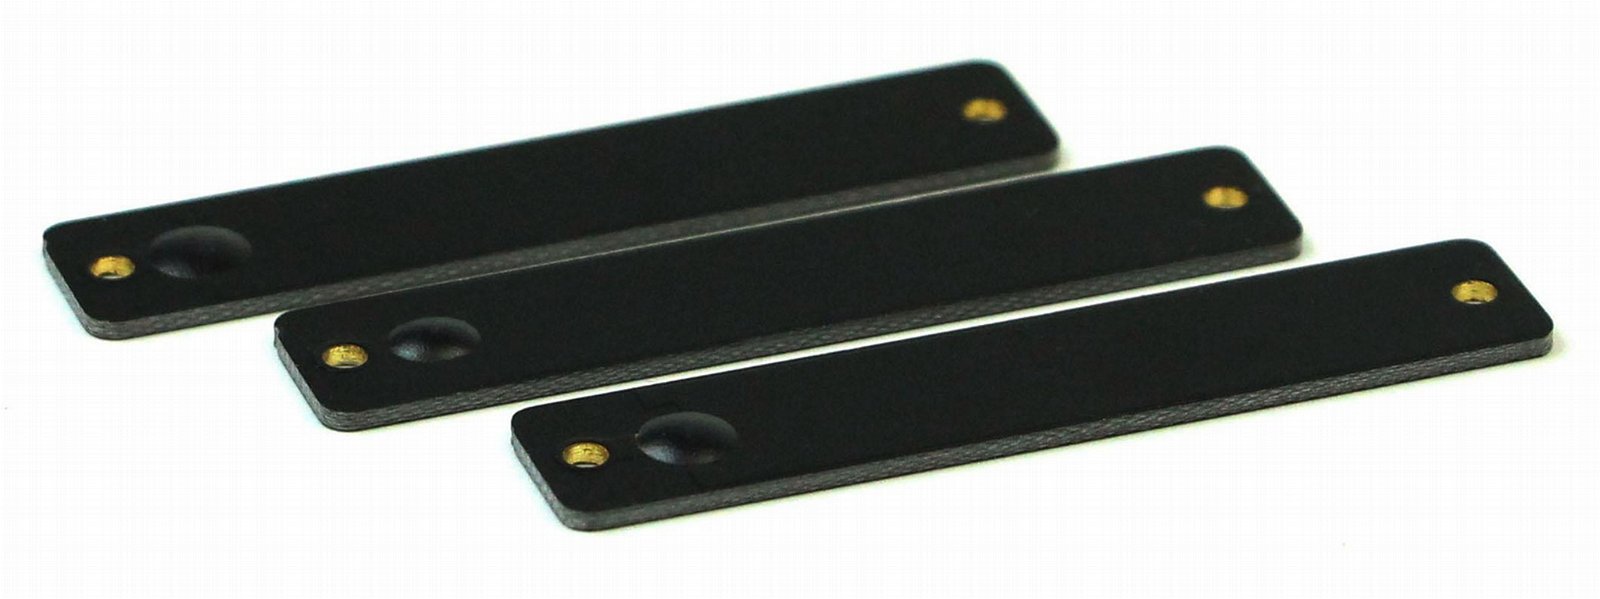 Custom PCB UHF RFID Anti-Metal Tag ISO1800-6c with H3 Chip